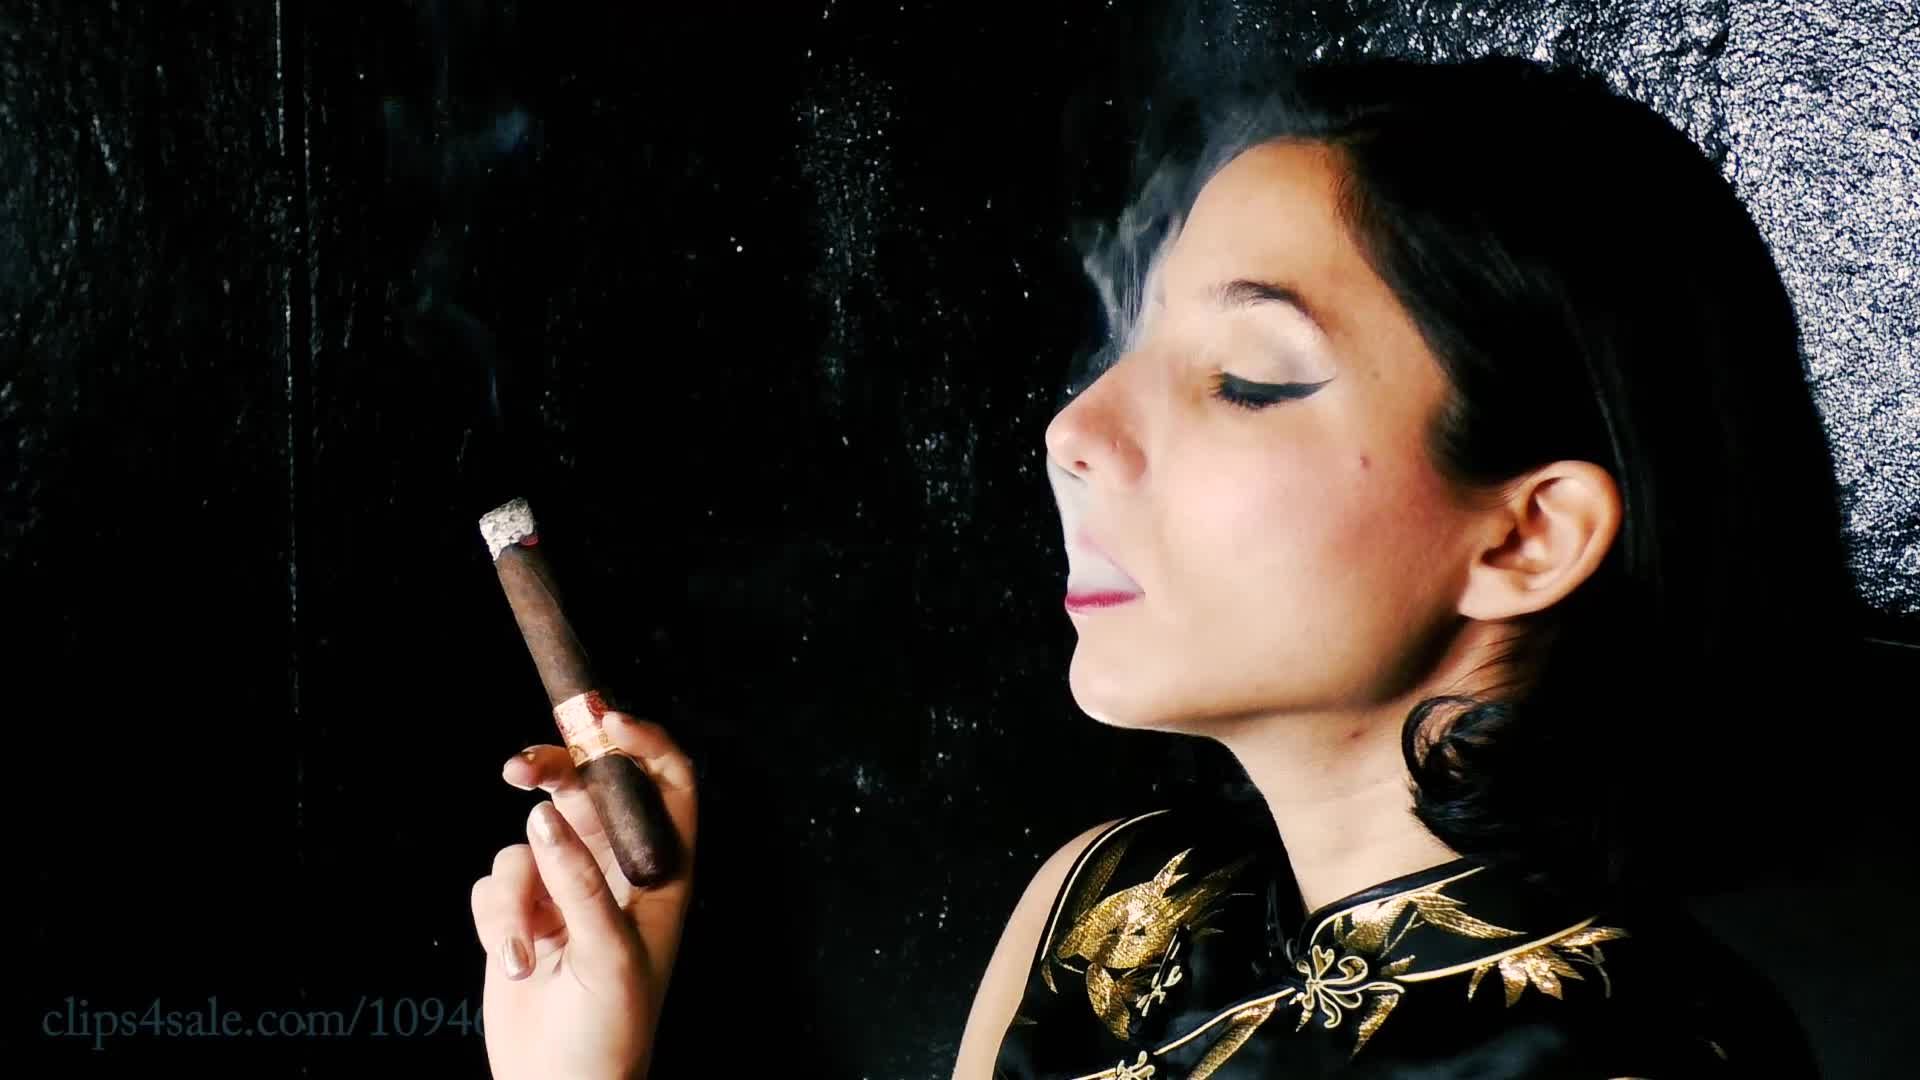 Cigar Smoking in an Elegant Dress